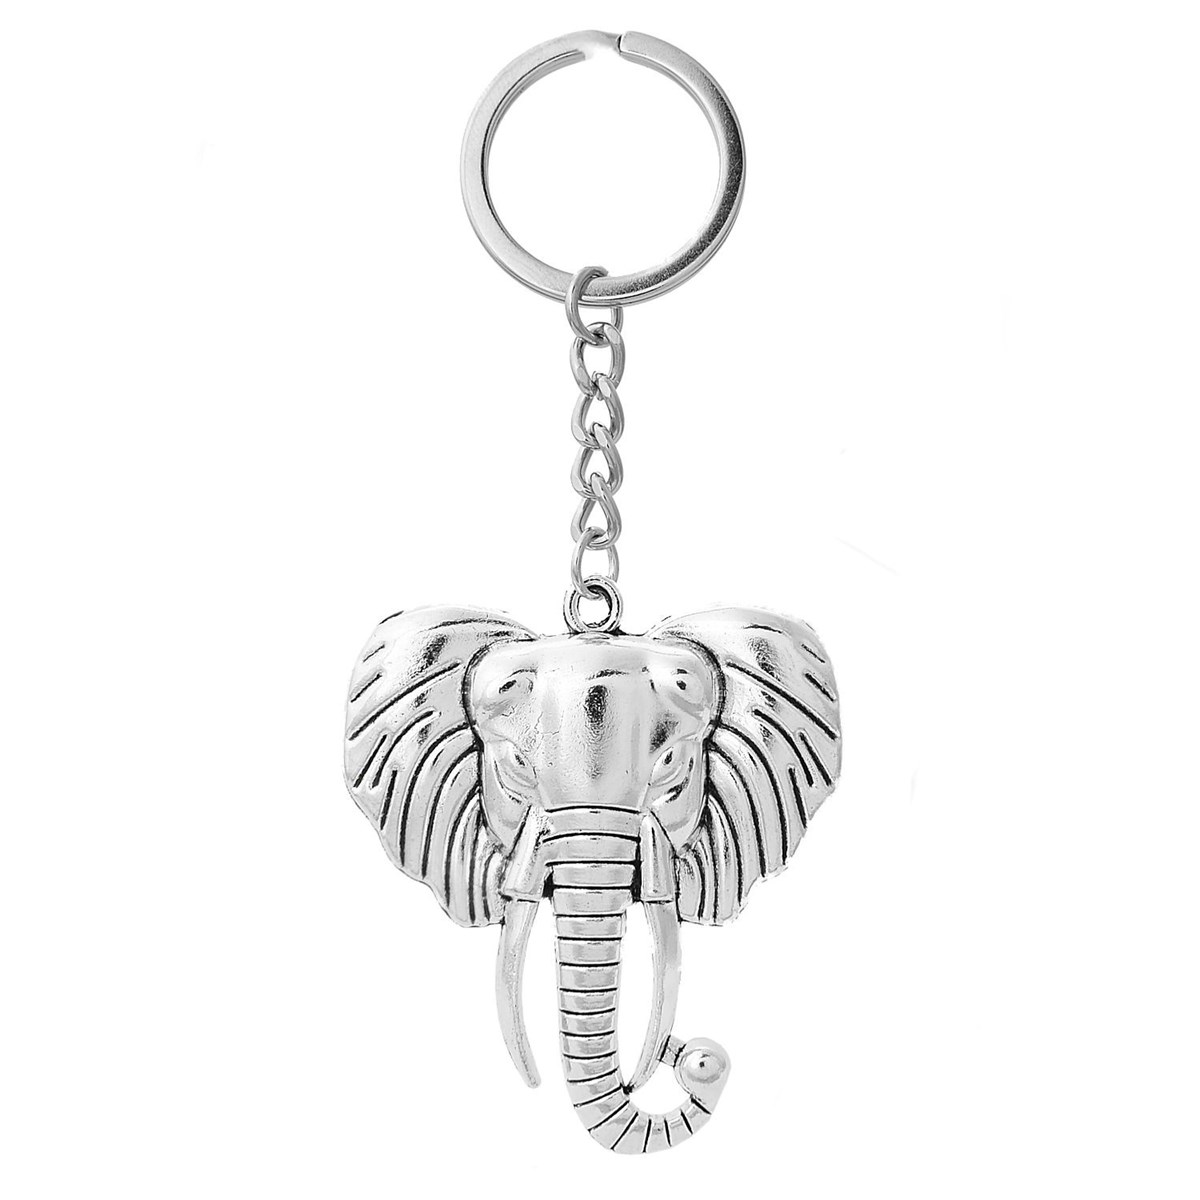 Porte-clés tête d'éléphant argenté